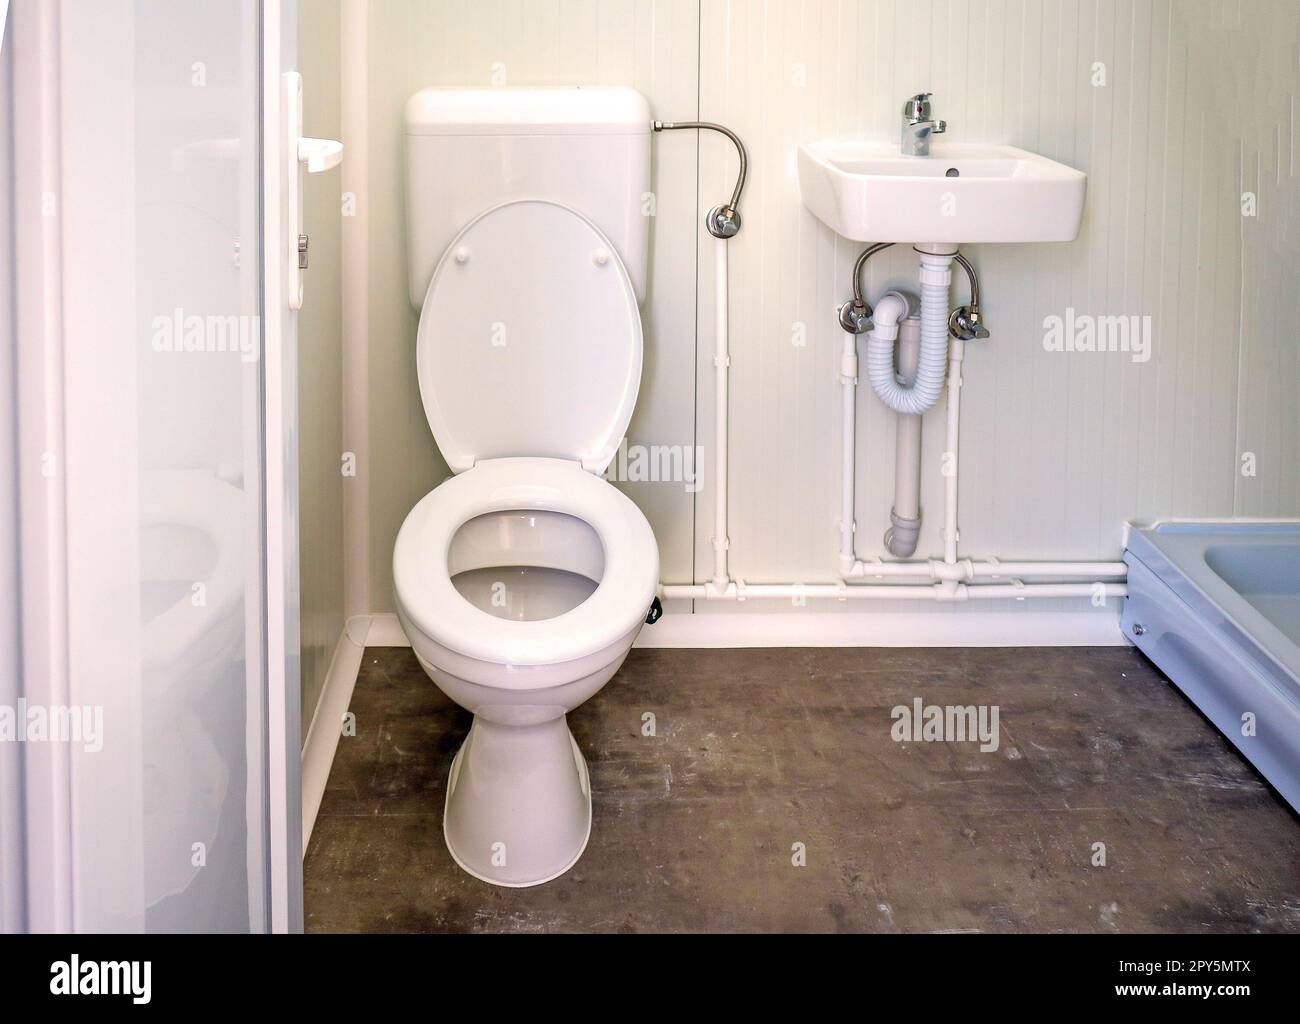 Kleine Toilette innen mit Keramikwaschbecken im öffentlichen Geschäft  Stockfotografie - Alamy